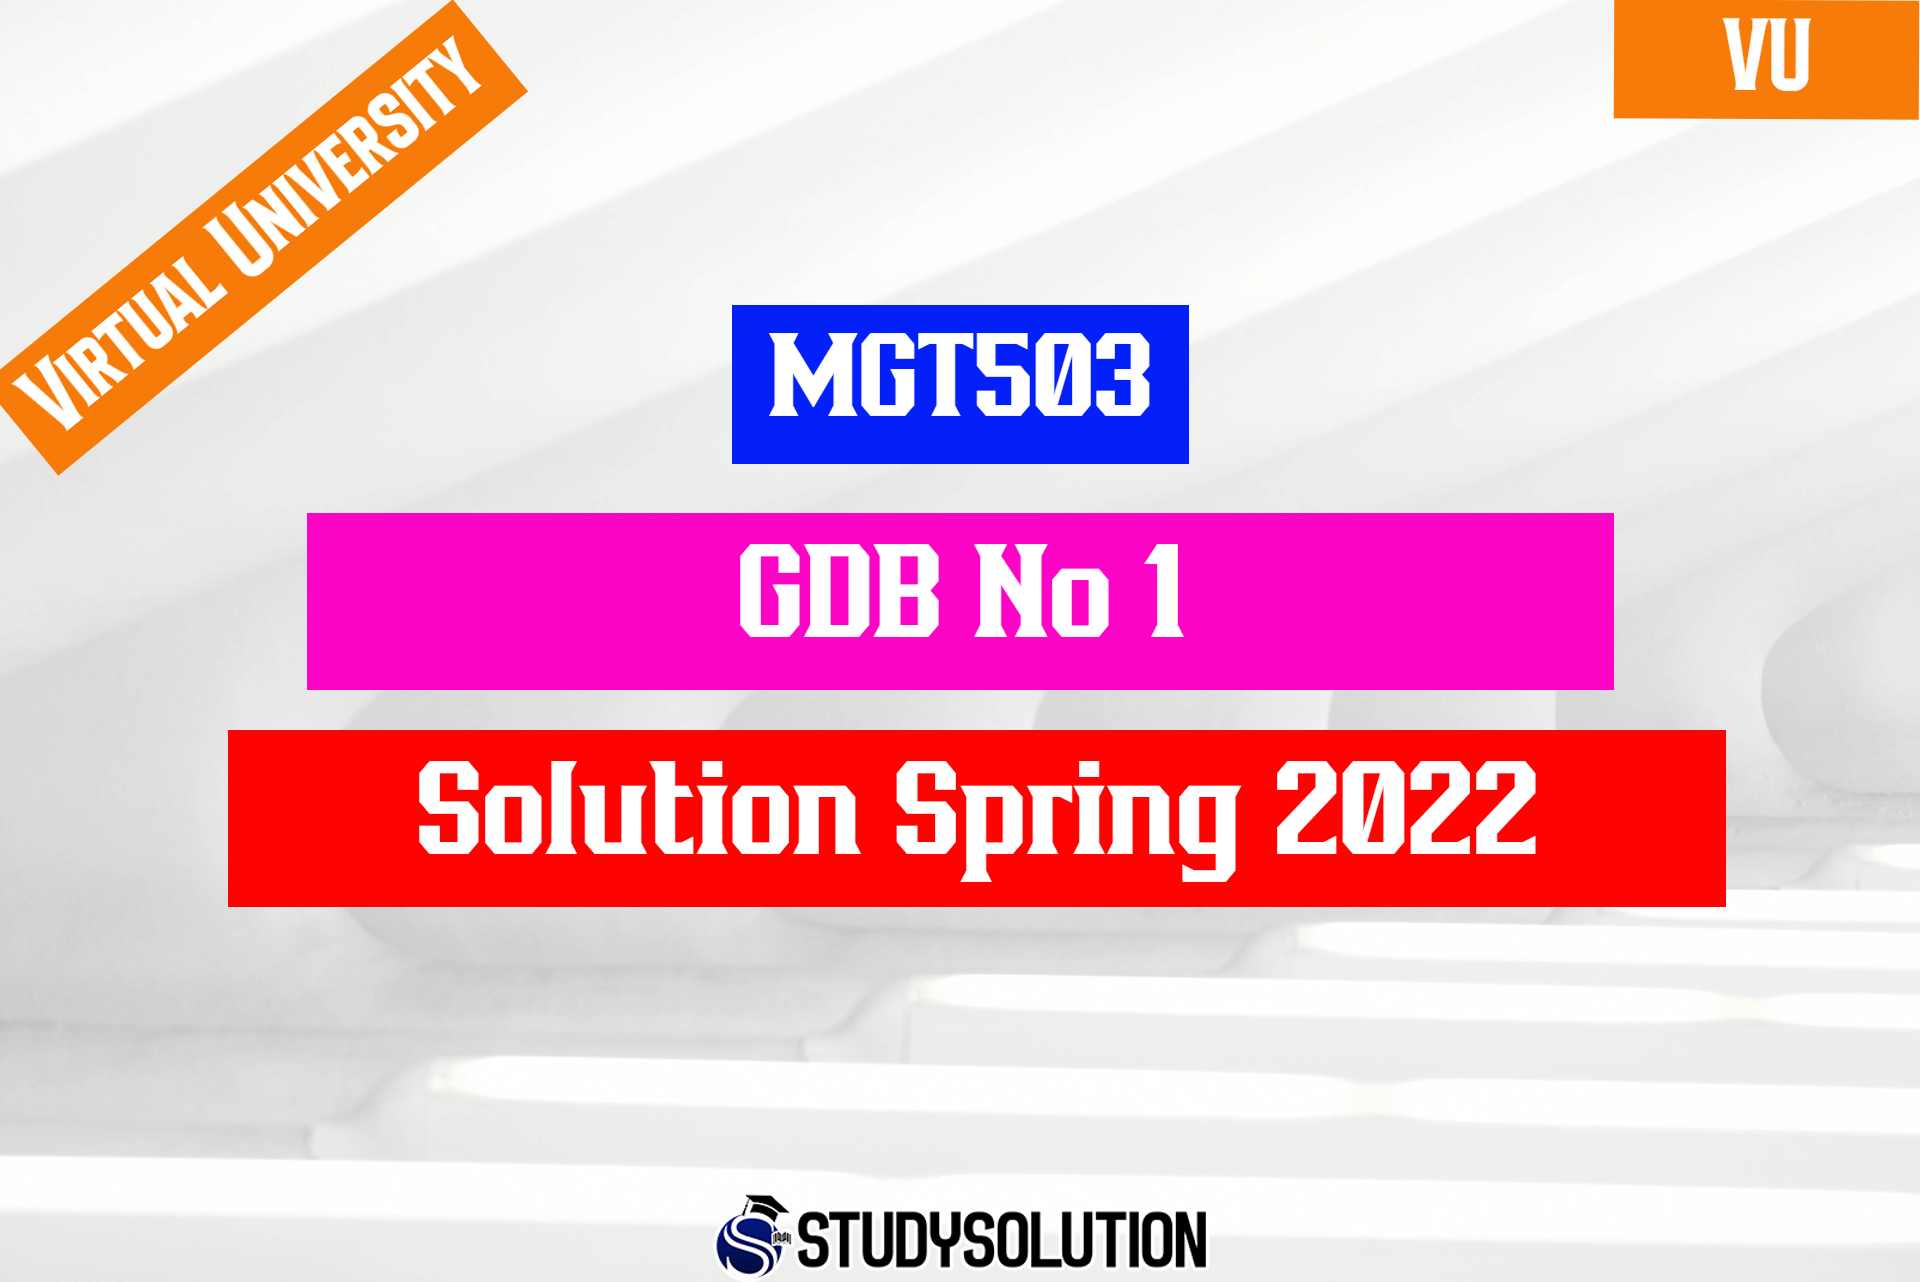 MGT503 GDB No 1 Solution Spring 2022